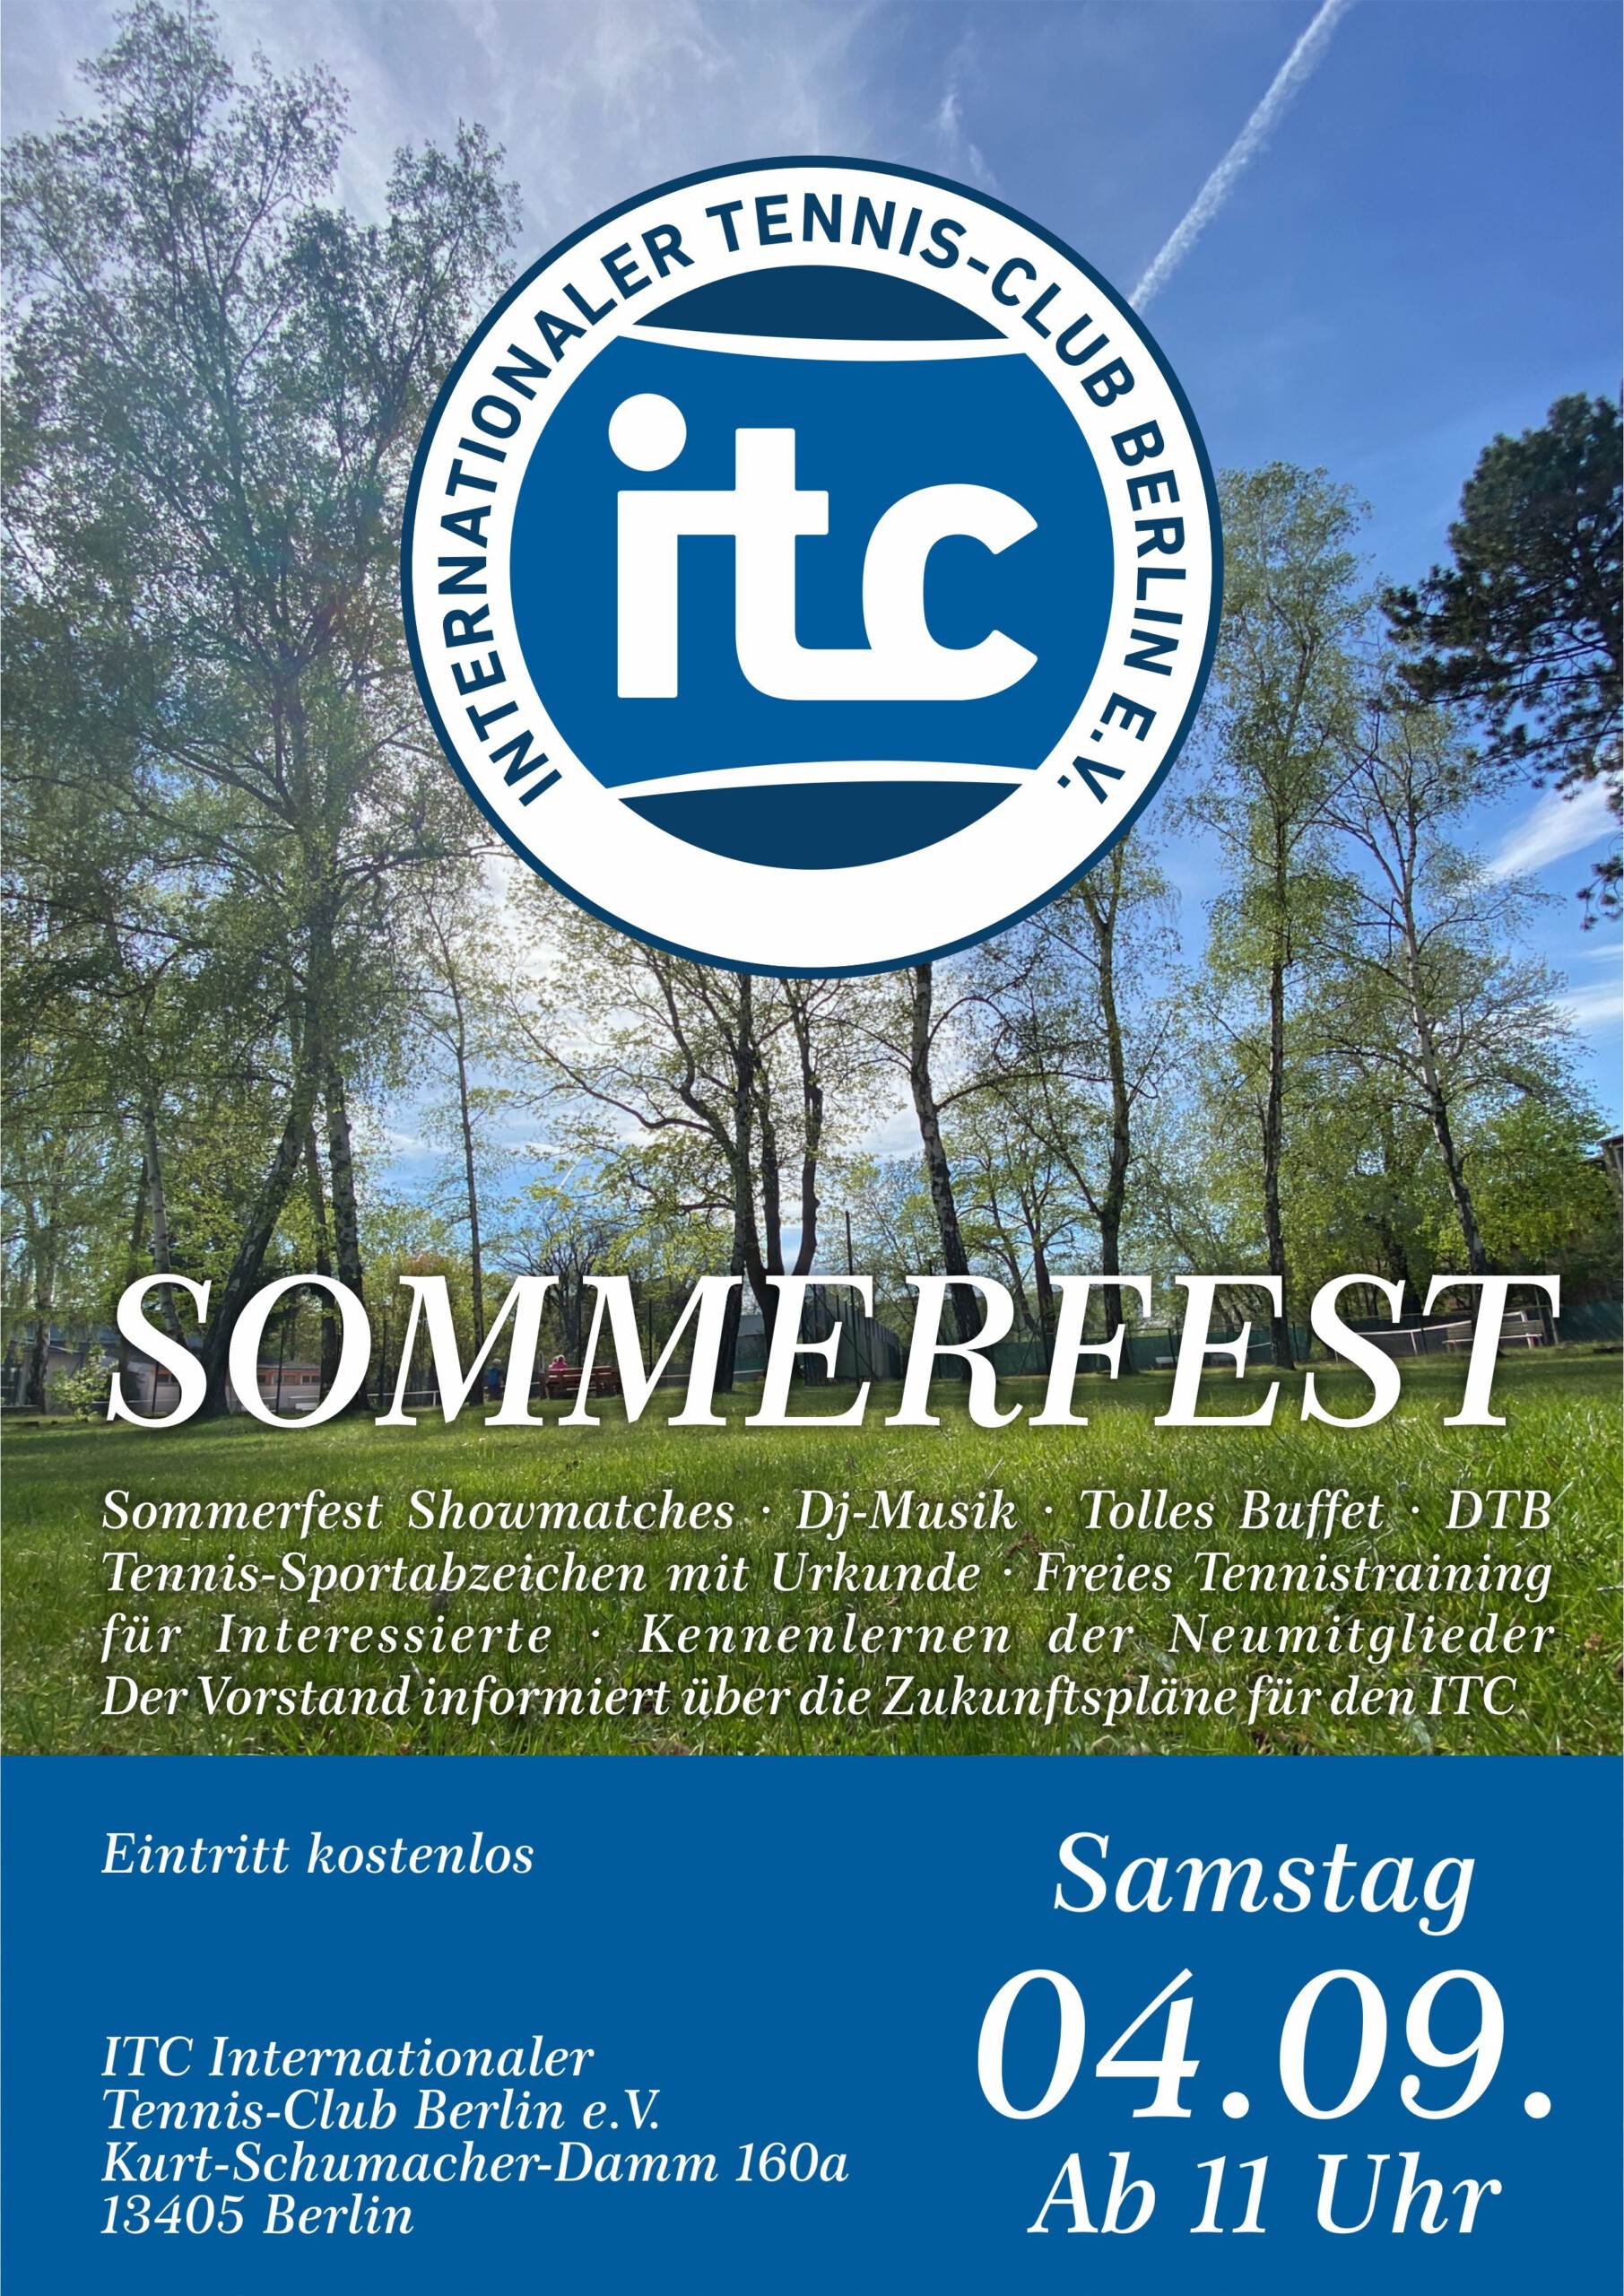 Newsletter-Sommerfest-scaled